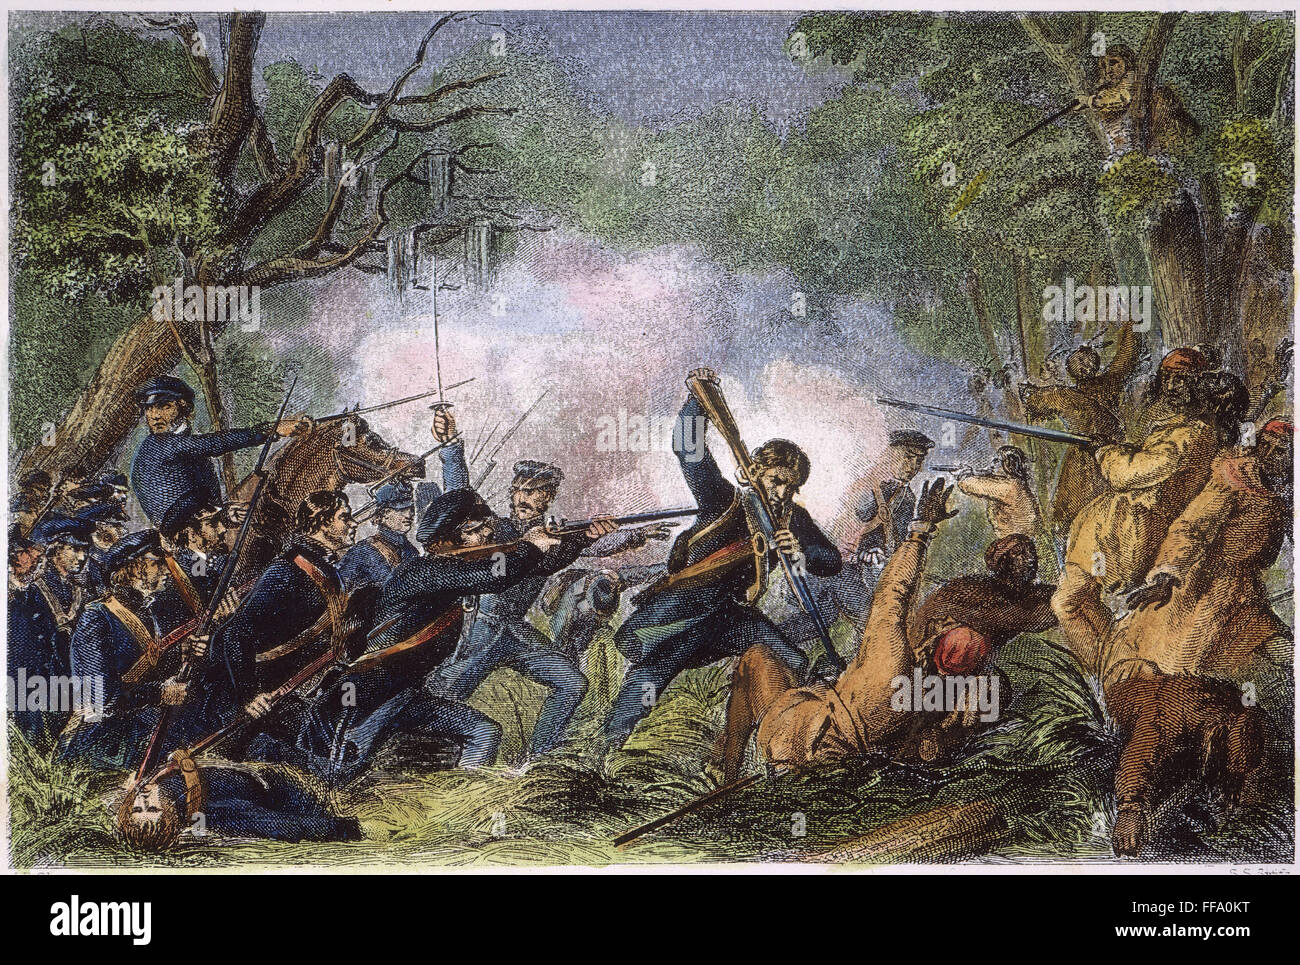 ZACHARY TAYLOR (1784-1850). /nColonel Zachary Taylor und seine Männer besiegen die Seminole Indianer am Lake Okeechobee, Florida, 25. Dezember 1837. Stahlstich, 1860. Stockfoto